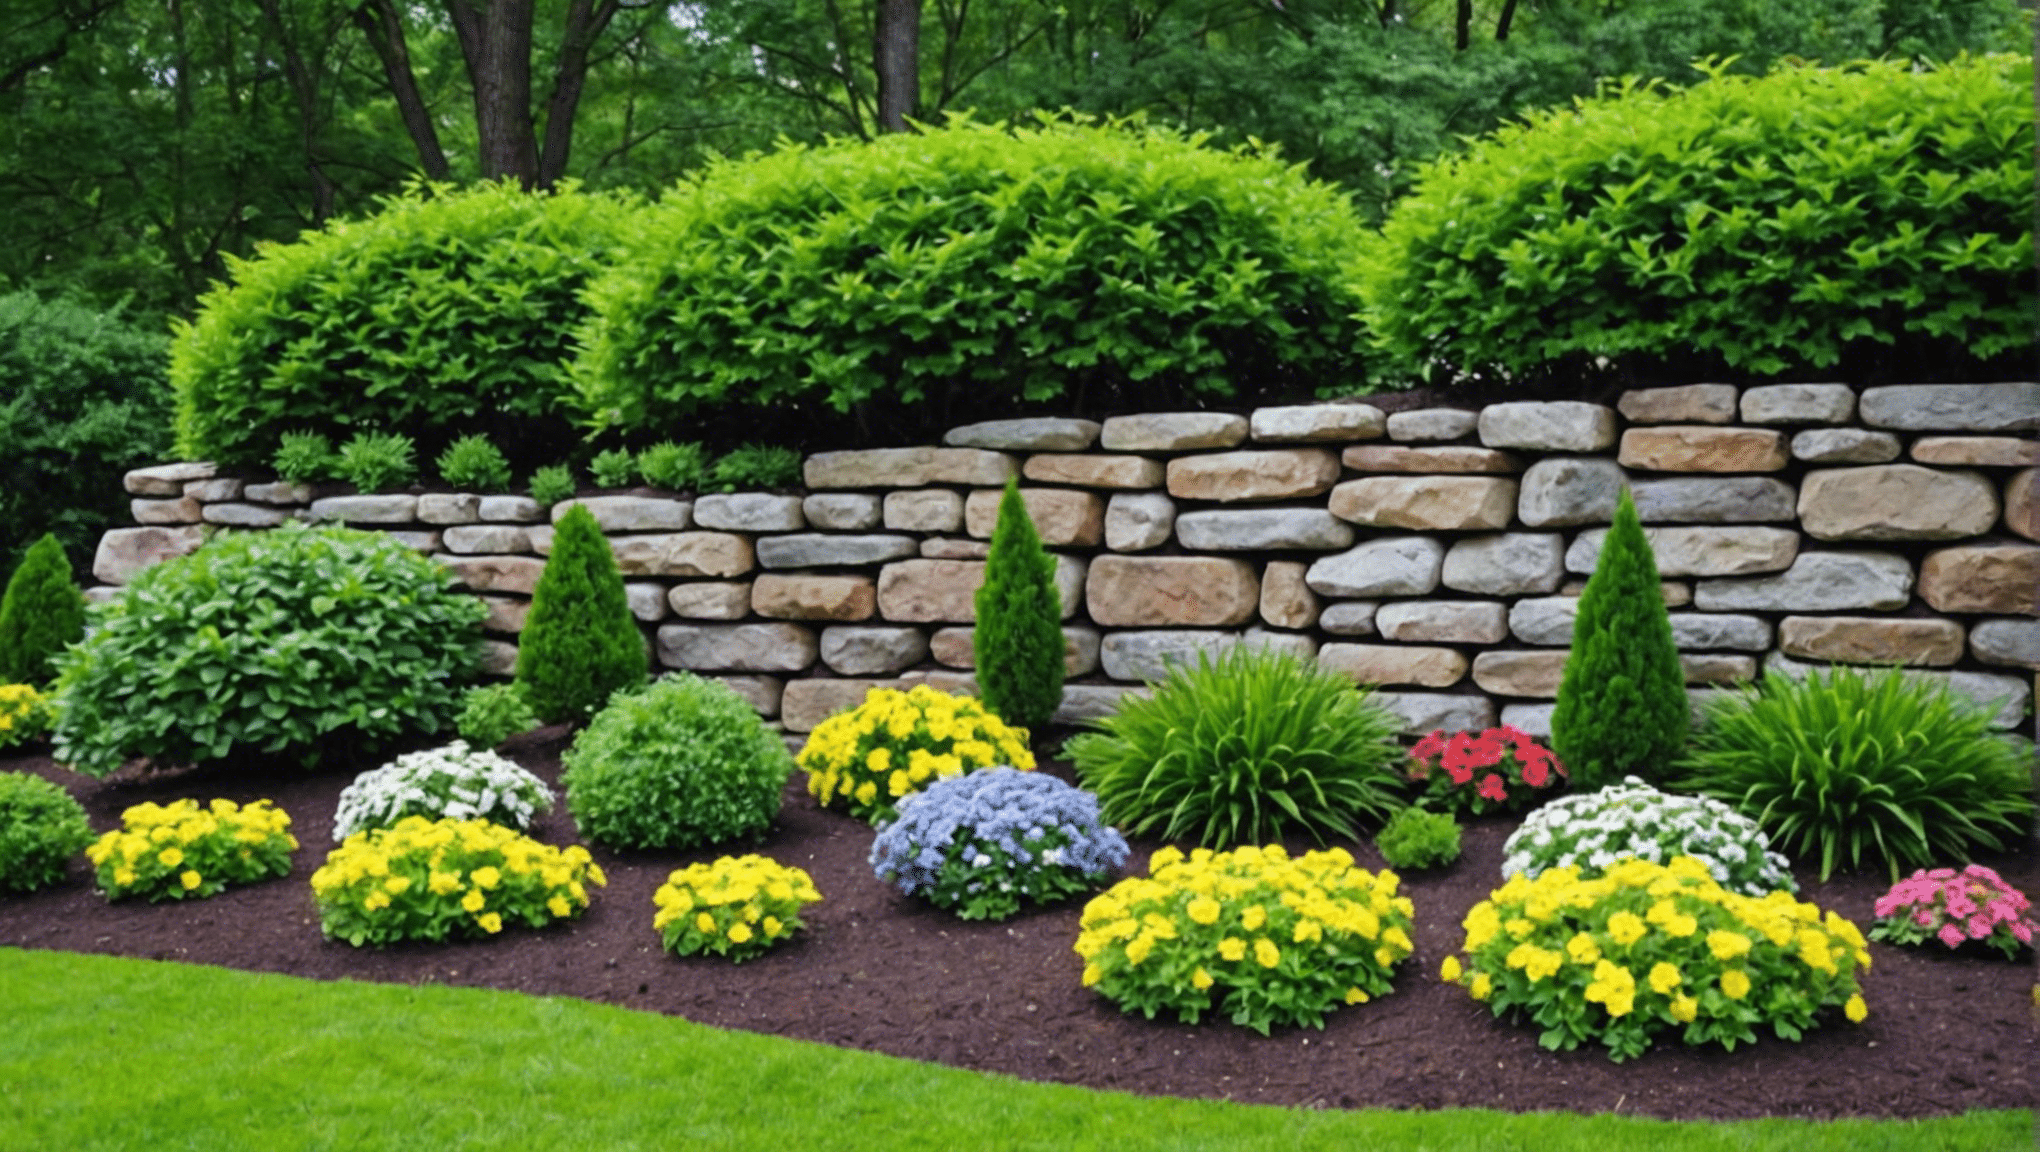 objevte kreativní nápady na zahradničení skalních stěn pro váš venkovní prostor s našimi inspirativními a inovativními návrhy. od vertikálních sukulentních zahrad až po kaskádové květinové expozice, najděte jedinečné způsoby, jak vylepšit svou skalní stěnu rostlinami.